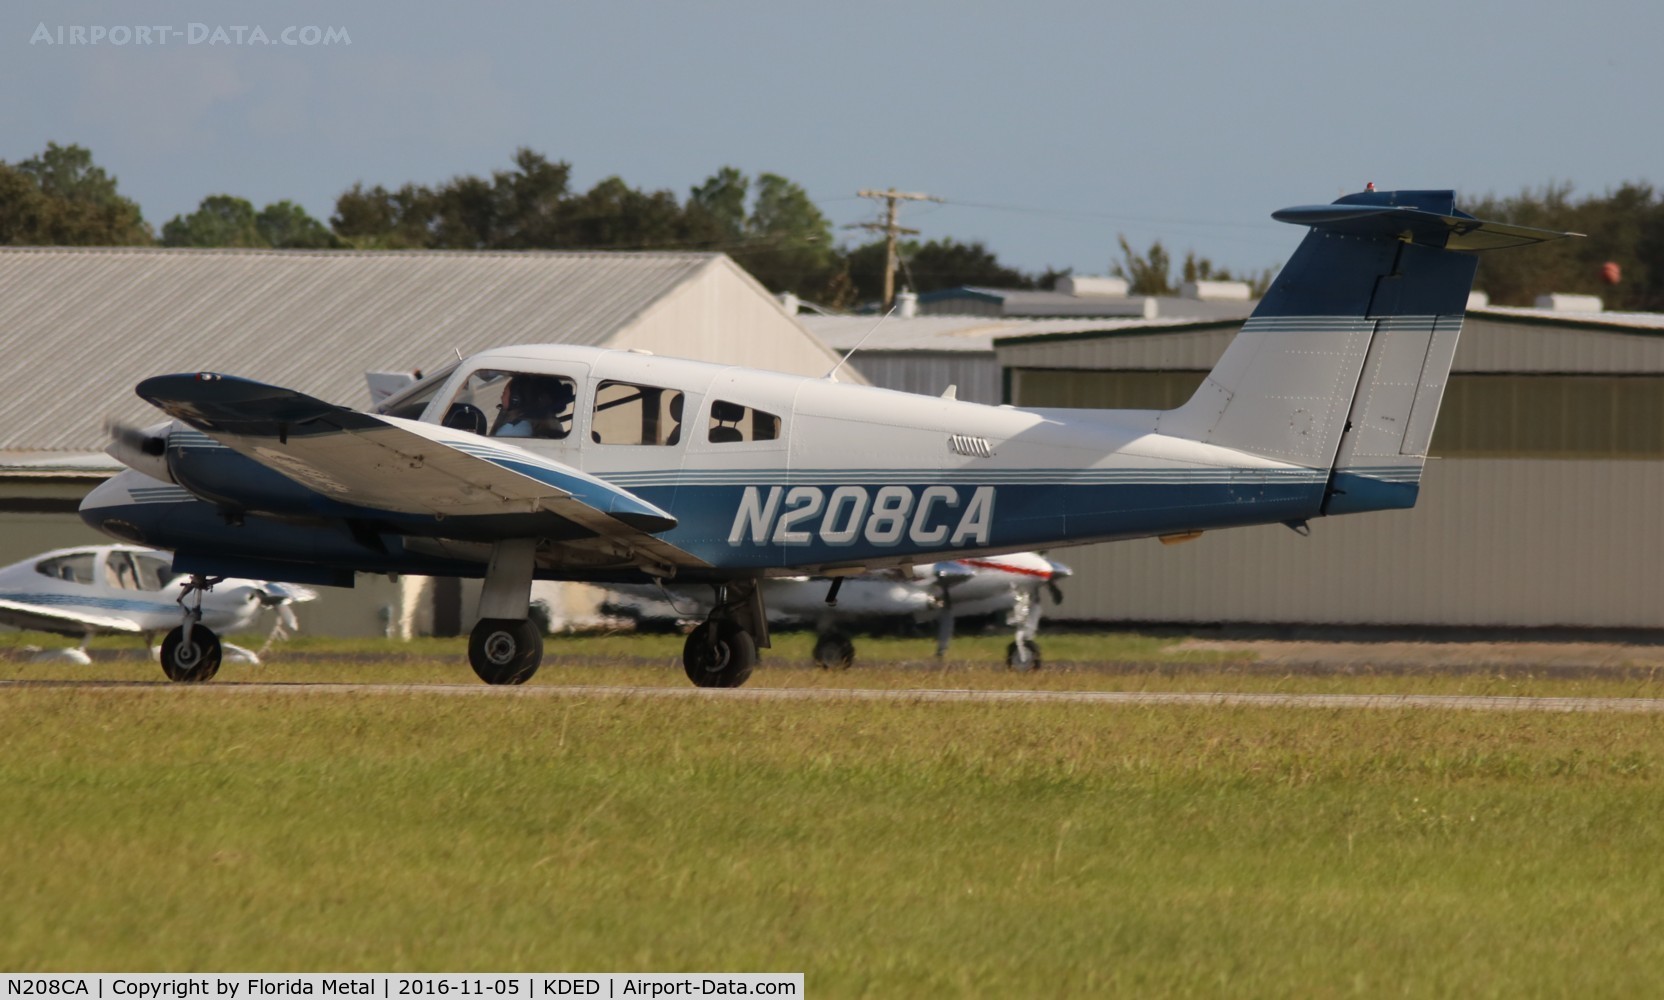 N208CA, 2002 Piper PA-44-180 Seminole C/N 4496161, PA-44 zx